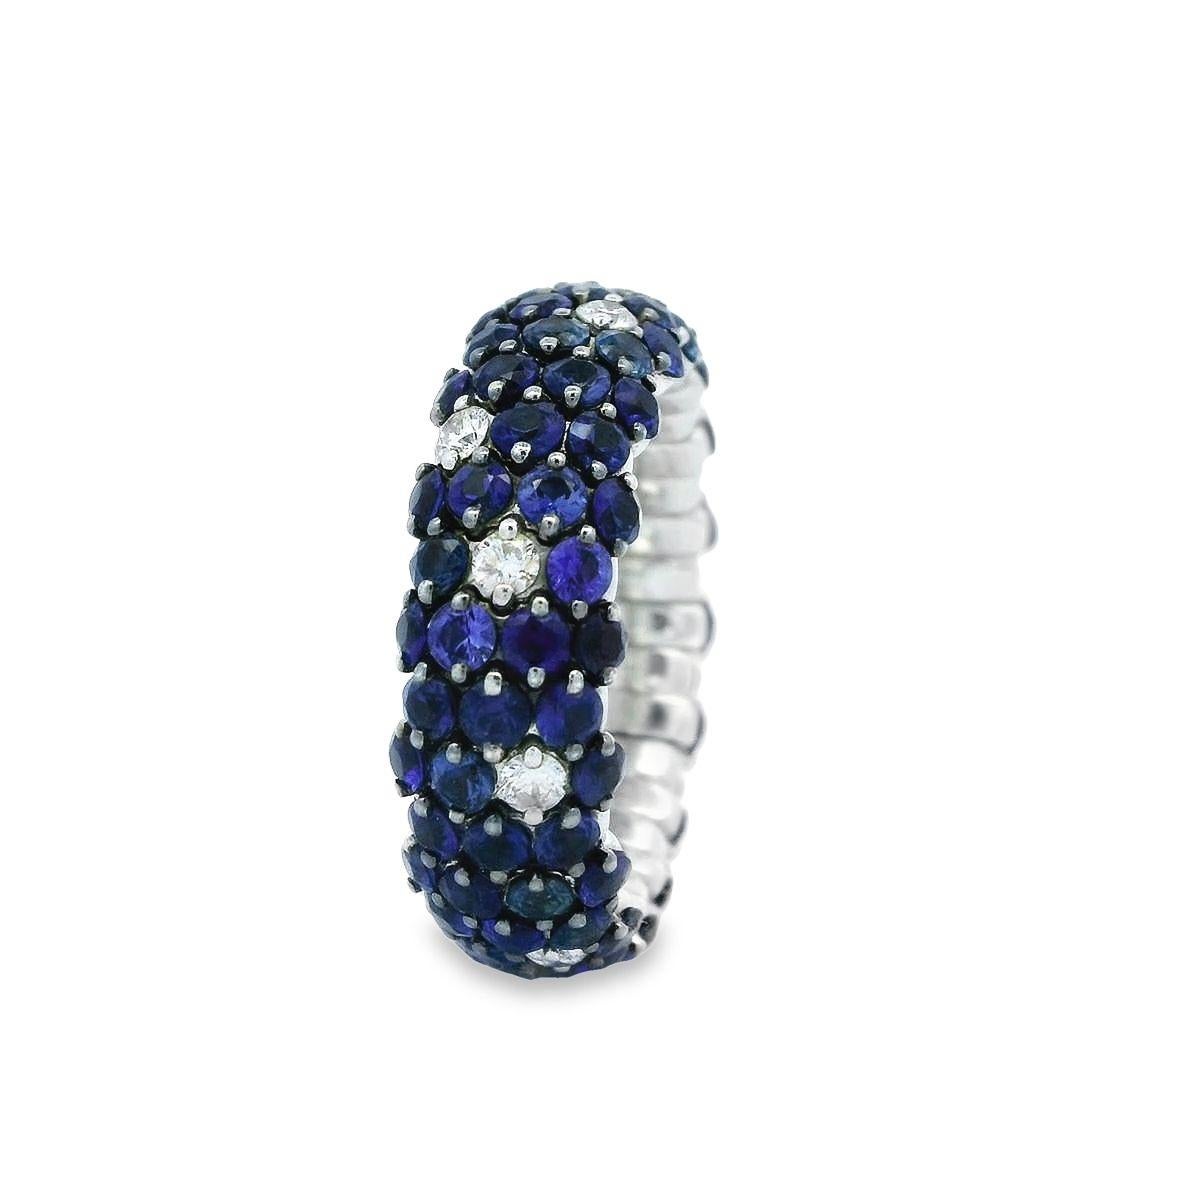 Angeboten von Alex & Co ist eine markante 18K Weißgold Stretch-Ring verfügt über 4,92ct von runden blauen Saphiren und Brillantschliff runden Diamanten mit einem Gewicht von 0,36ct F Farbe, VS Klarheit klassischen Look. Durch die dehnbare Wirkung